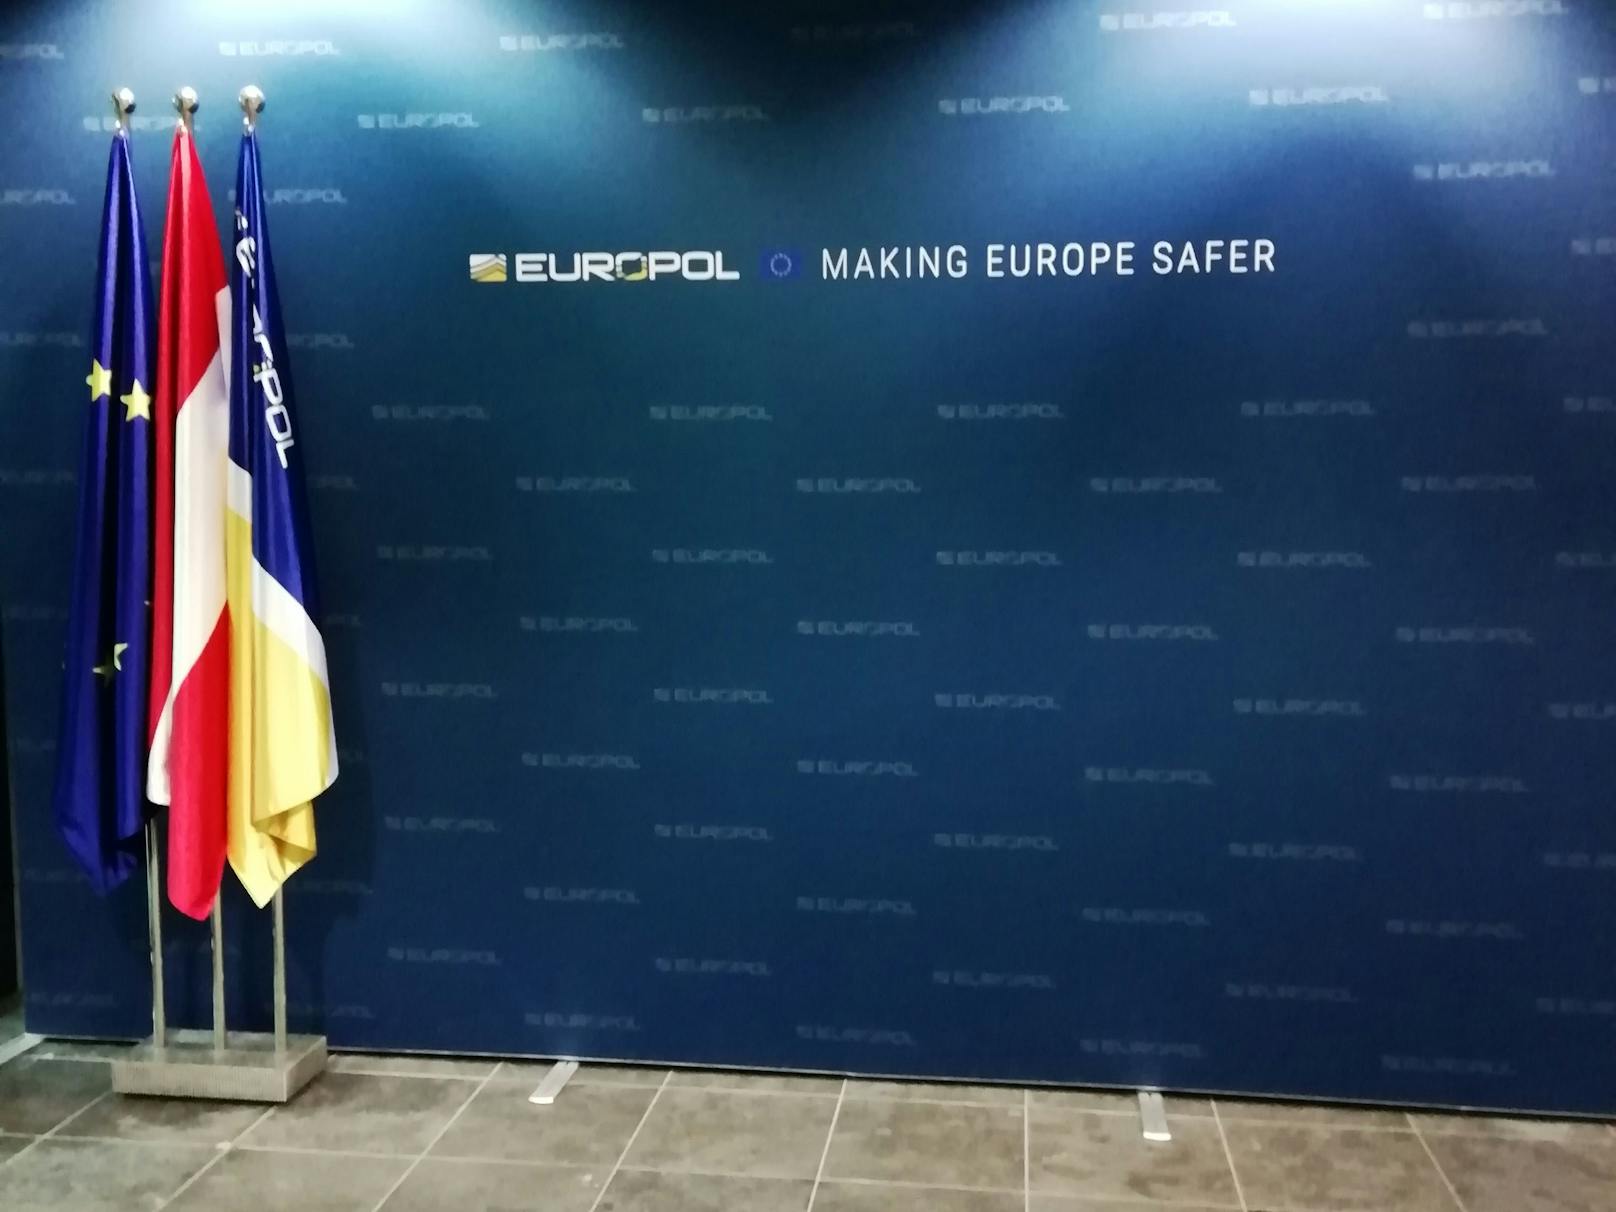 "Willkommen im sichersten Gebäude Europas", begrüßt eine freundliche Mitarbeiterin die Delegation auf Englisch.